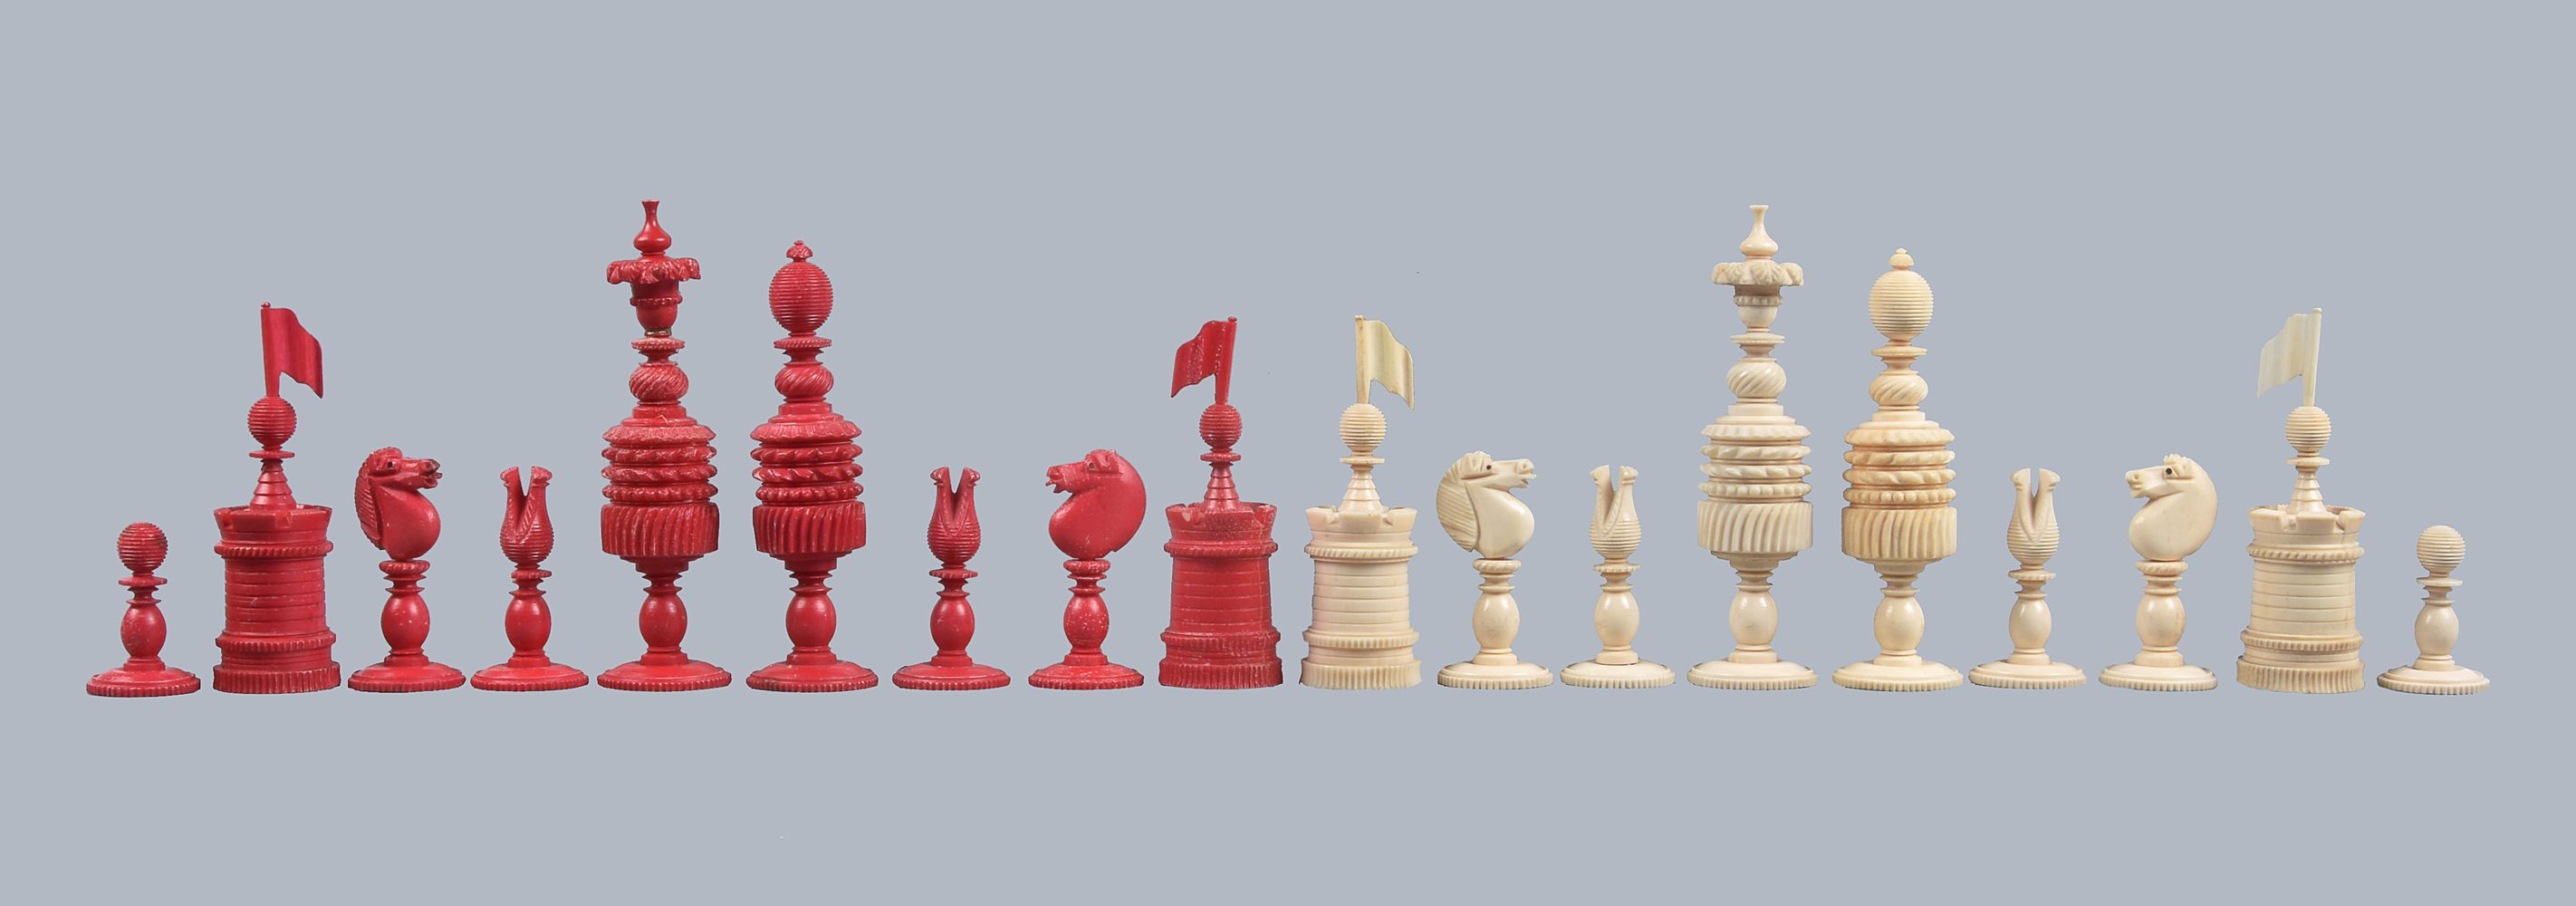 An English turned bone Barleycorn pattern chess set